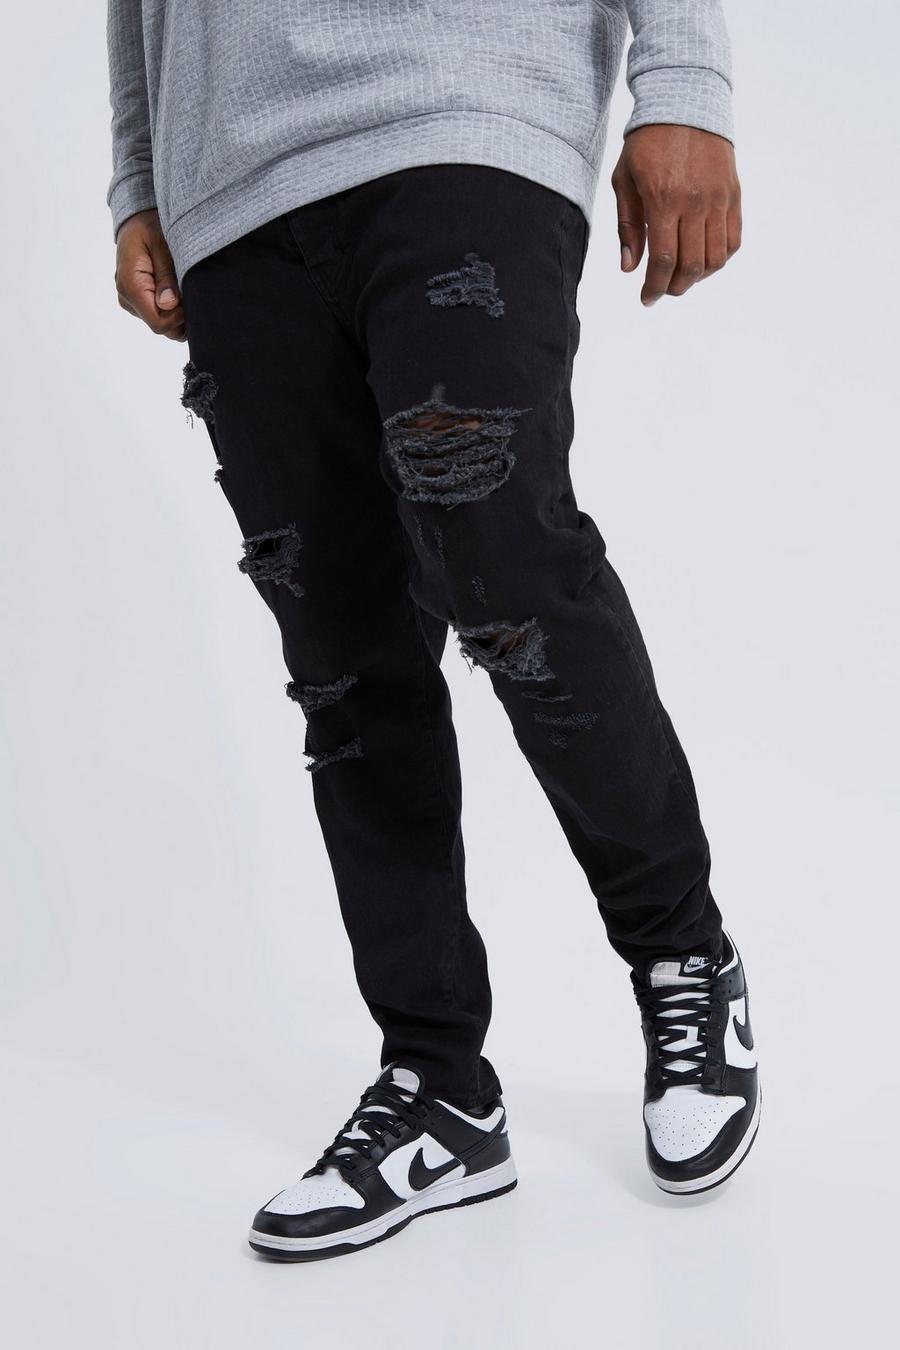 שחור אמיתי סקיני ג'ינס מבד נמתח עם קרעים לכל האורך למידות גדולות   image number 1